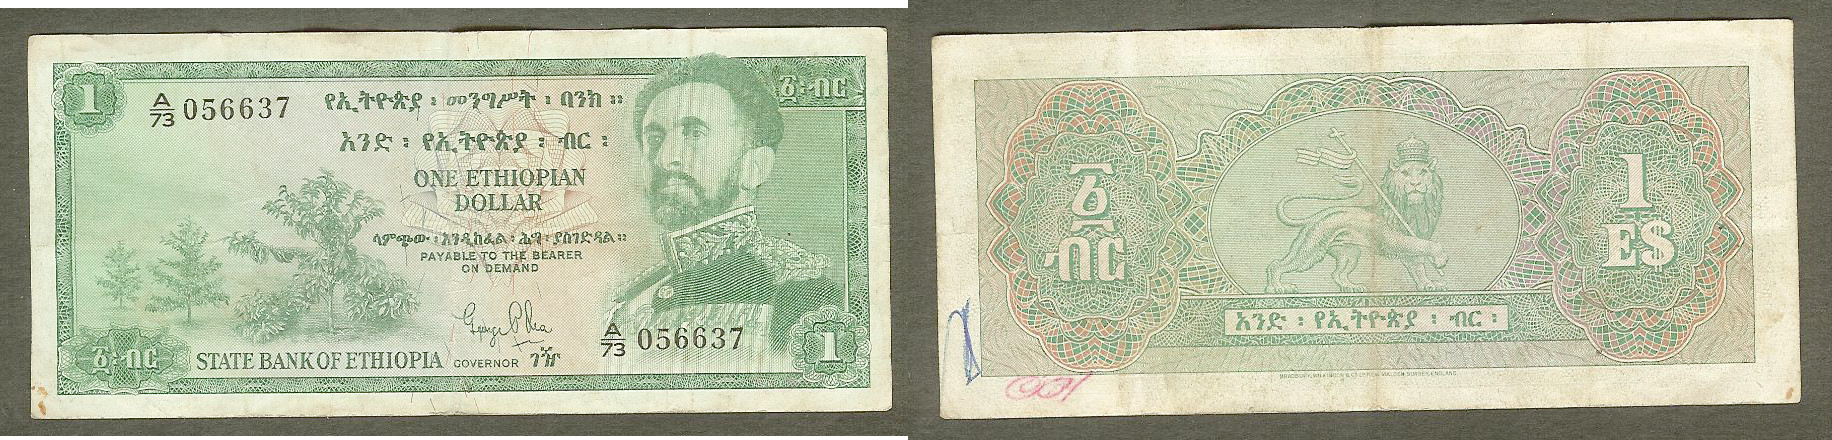 Ethiopie $1 Dollar (1961) Pick 18a TTB-